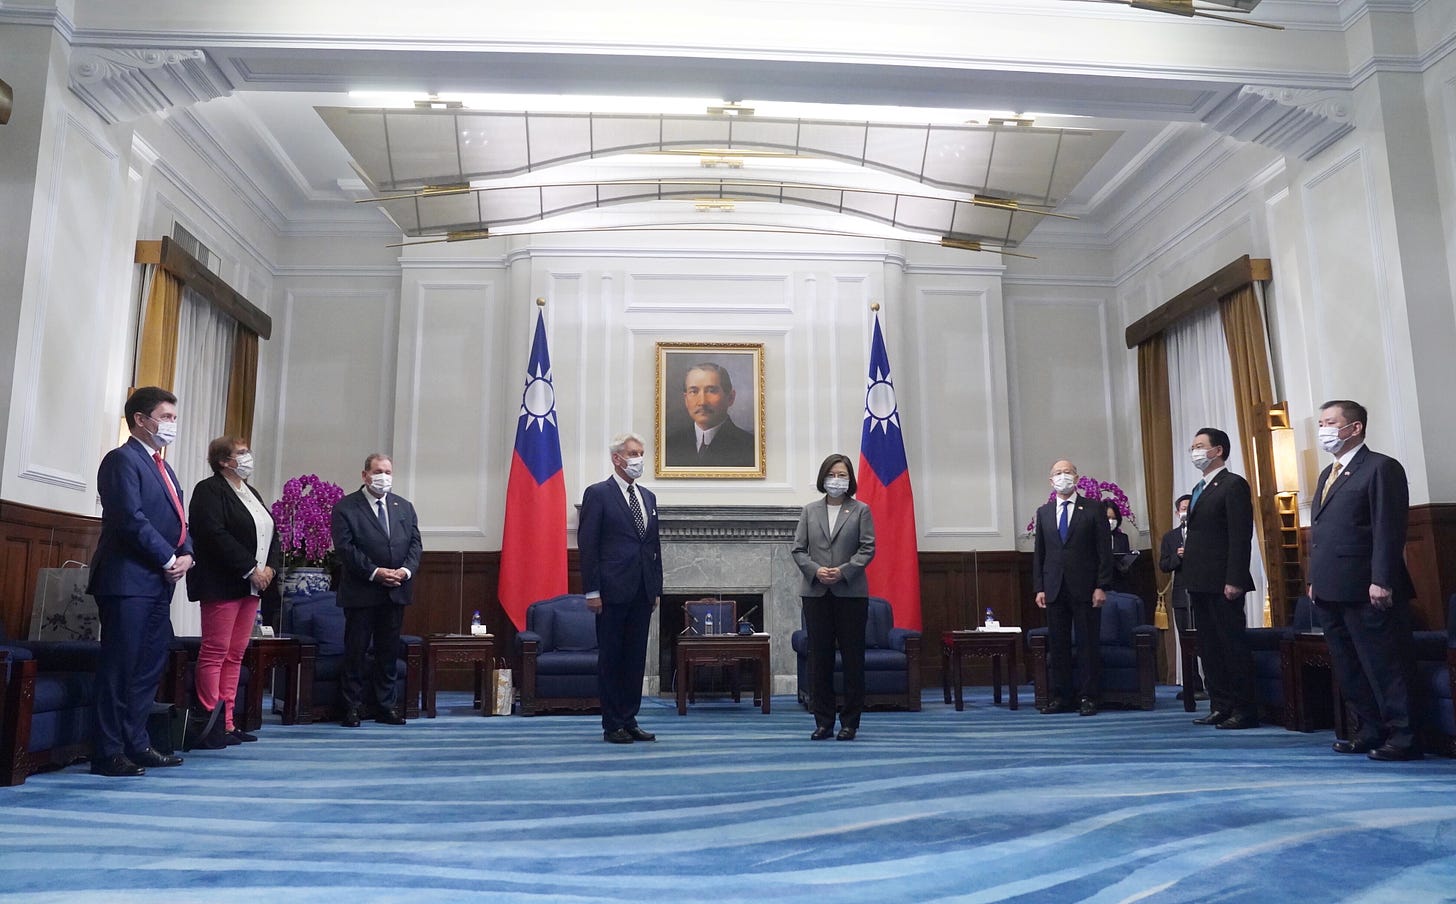 Taiwan will ensure regional peace, president tells French senators | Reuters